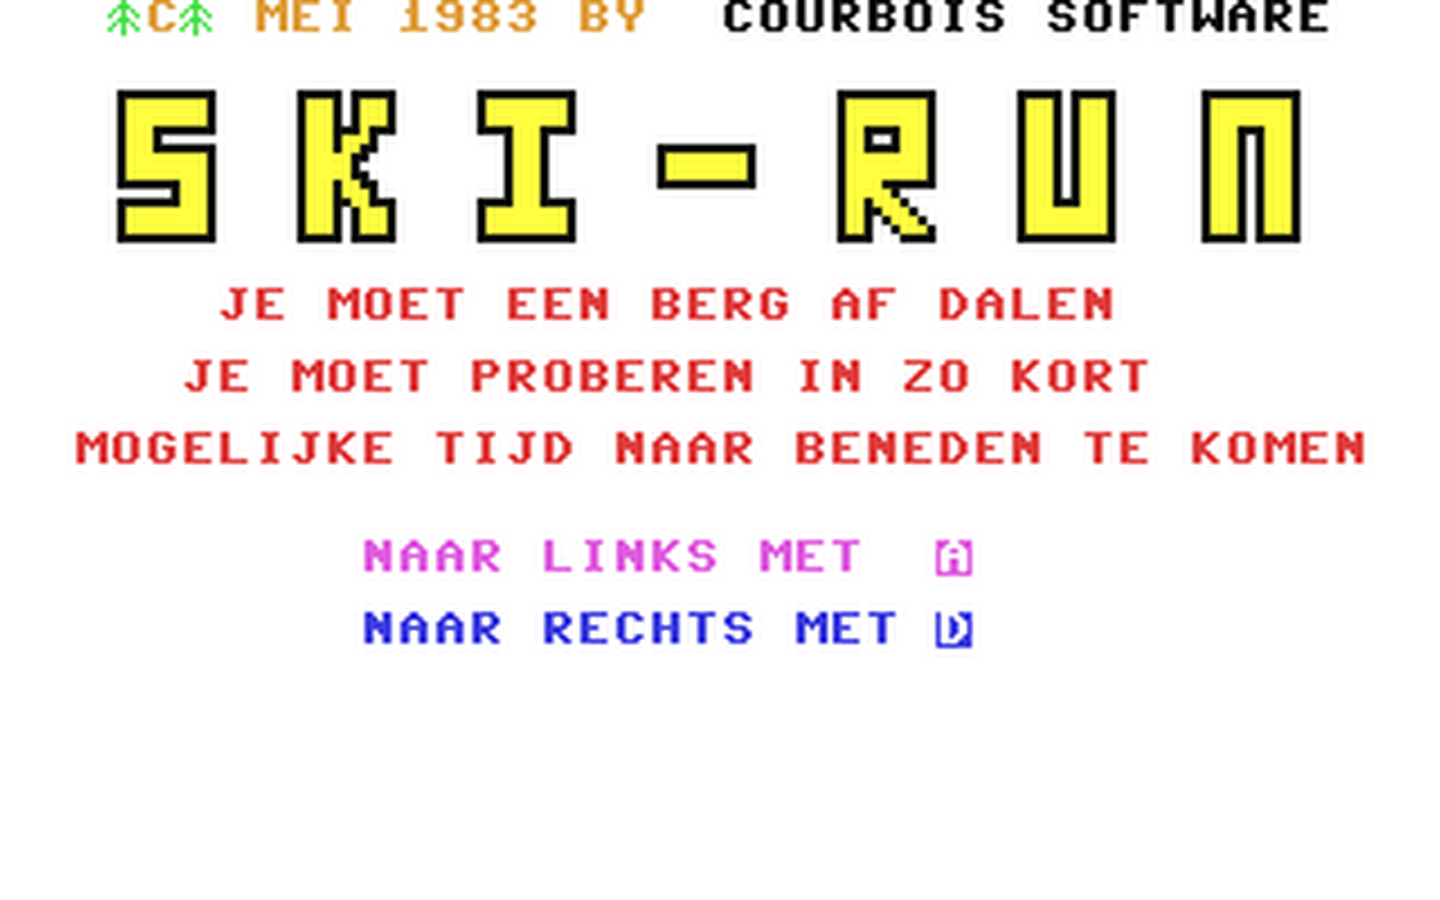 C64 GameBase Ski-Run Courbois_Software 1983